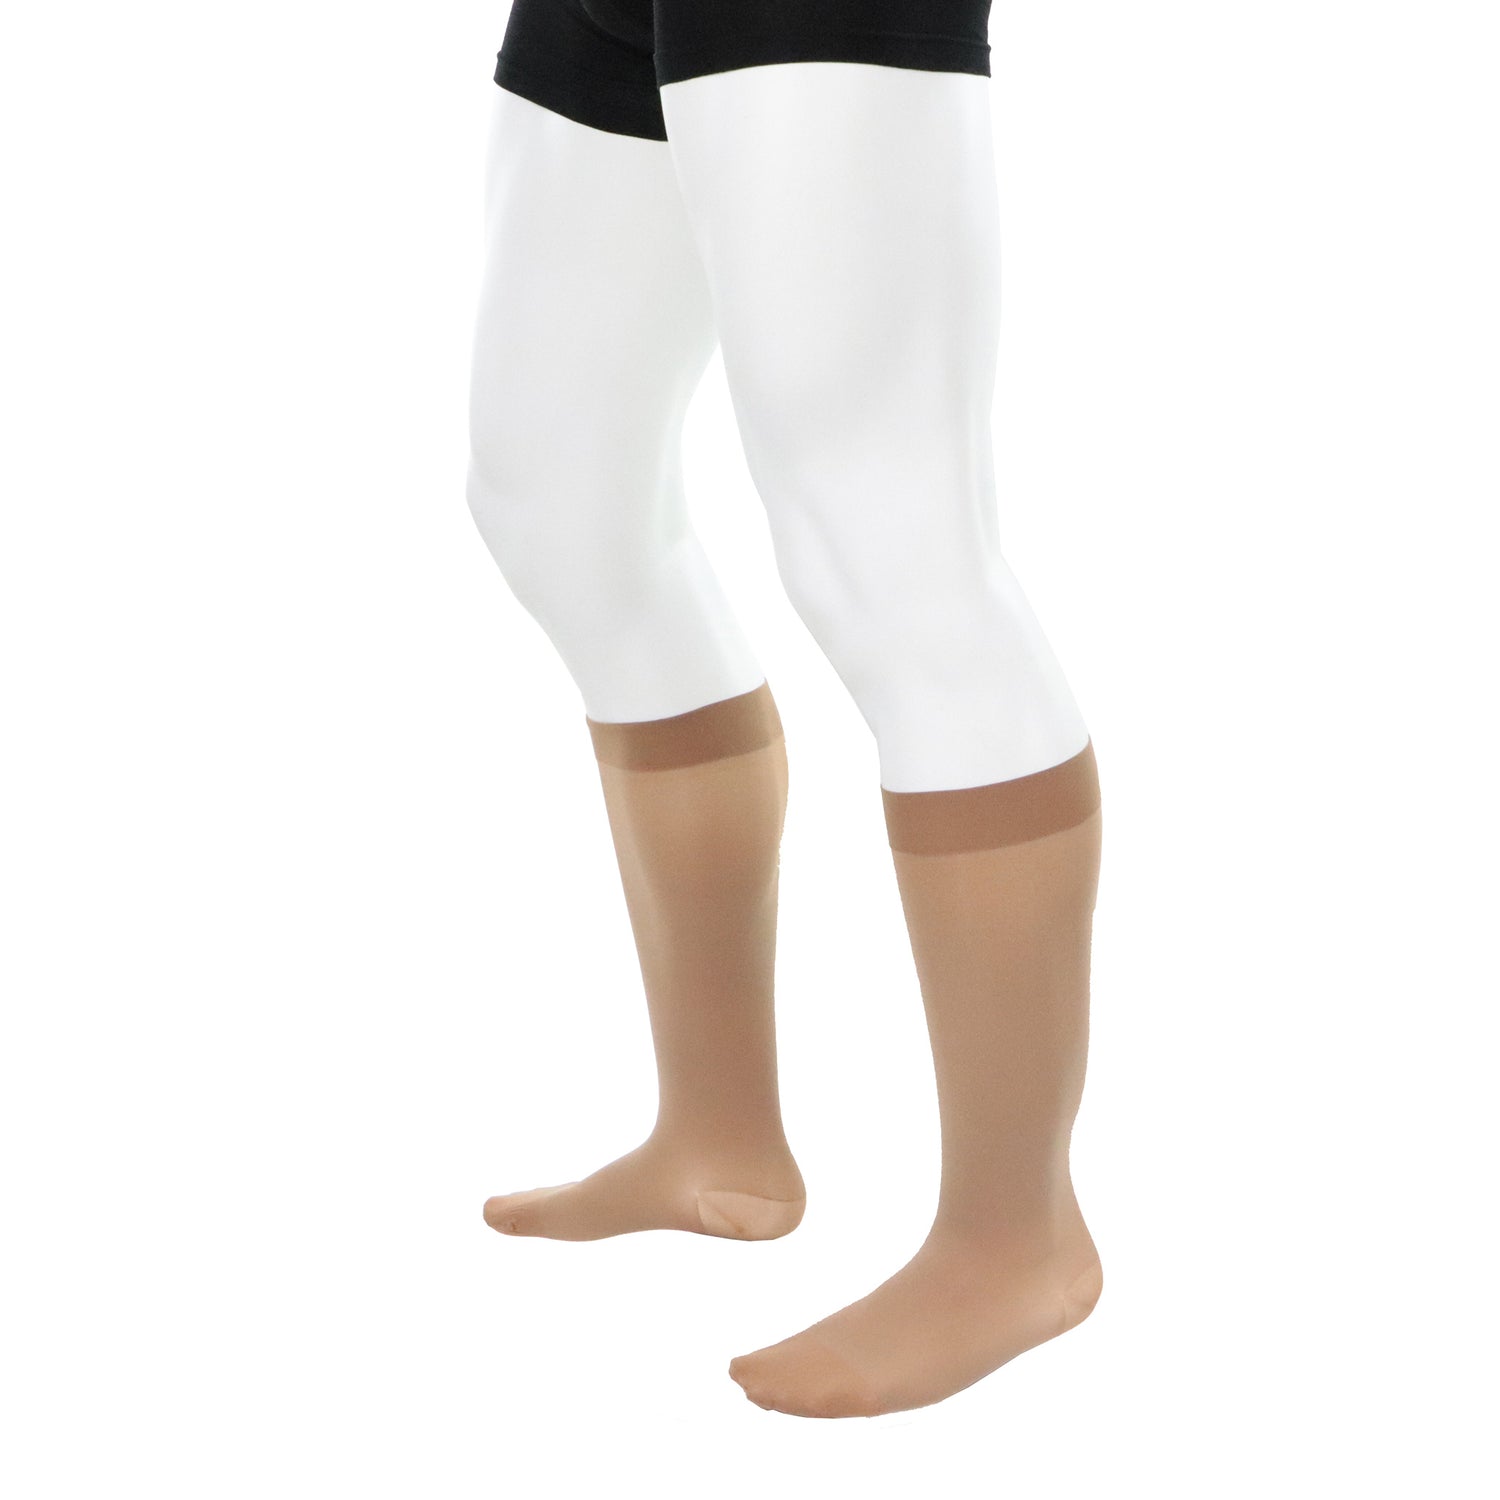 Knee high compression socks for men 20-30 mmhg beige natural left side view